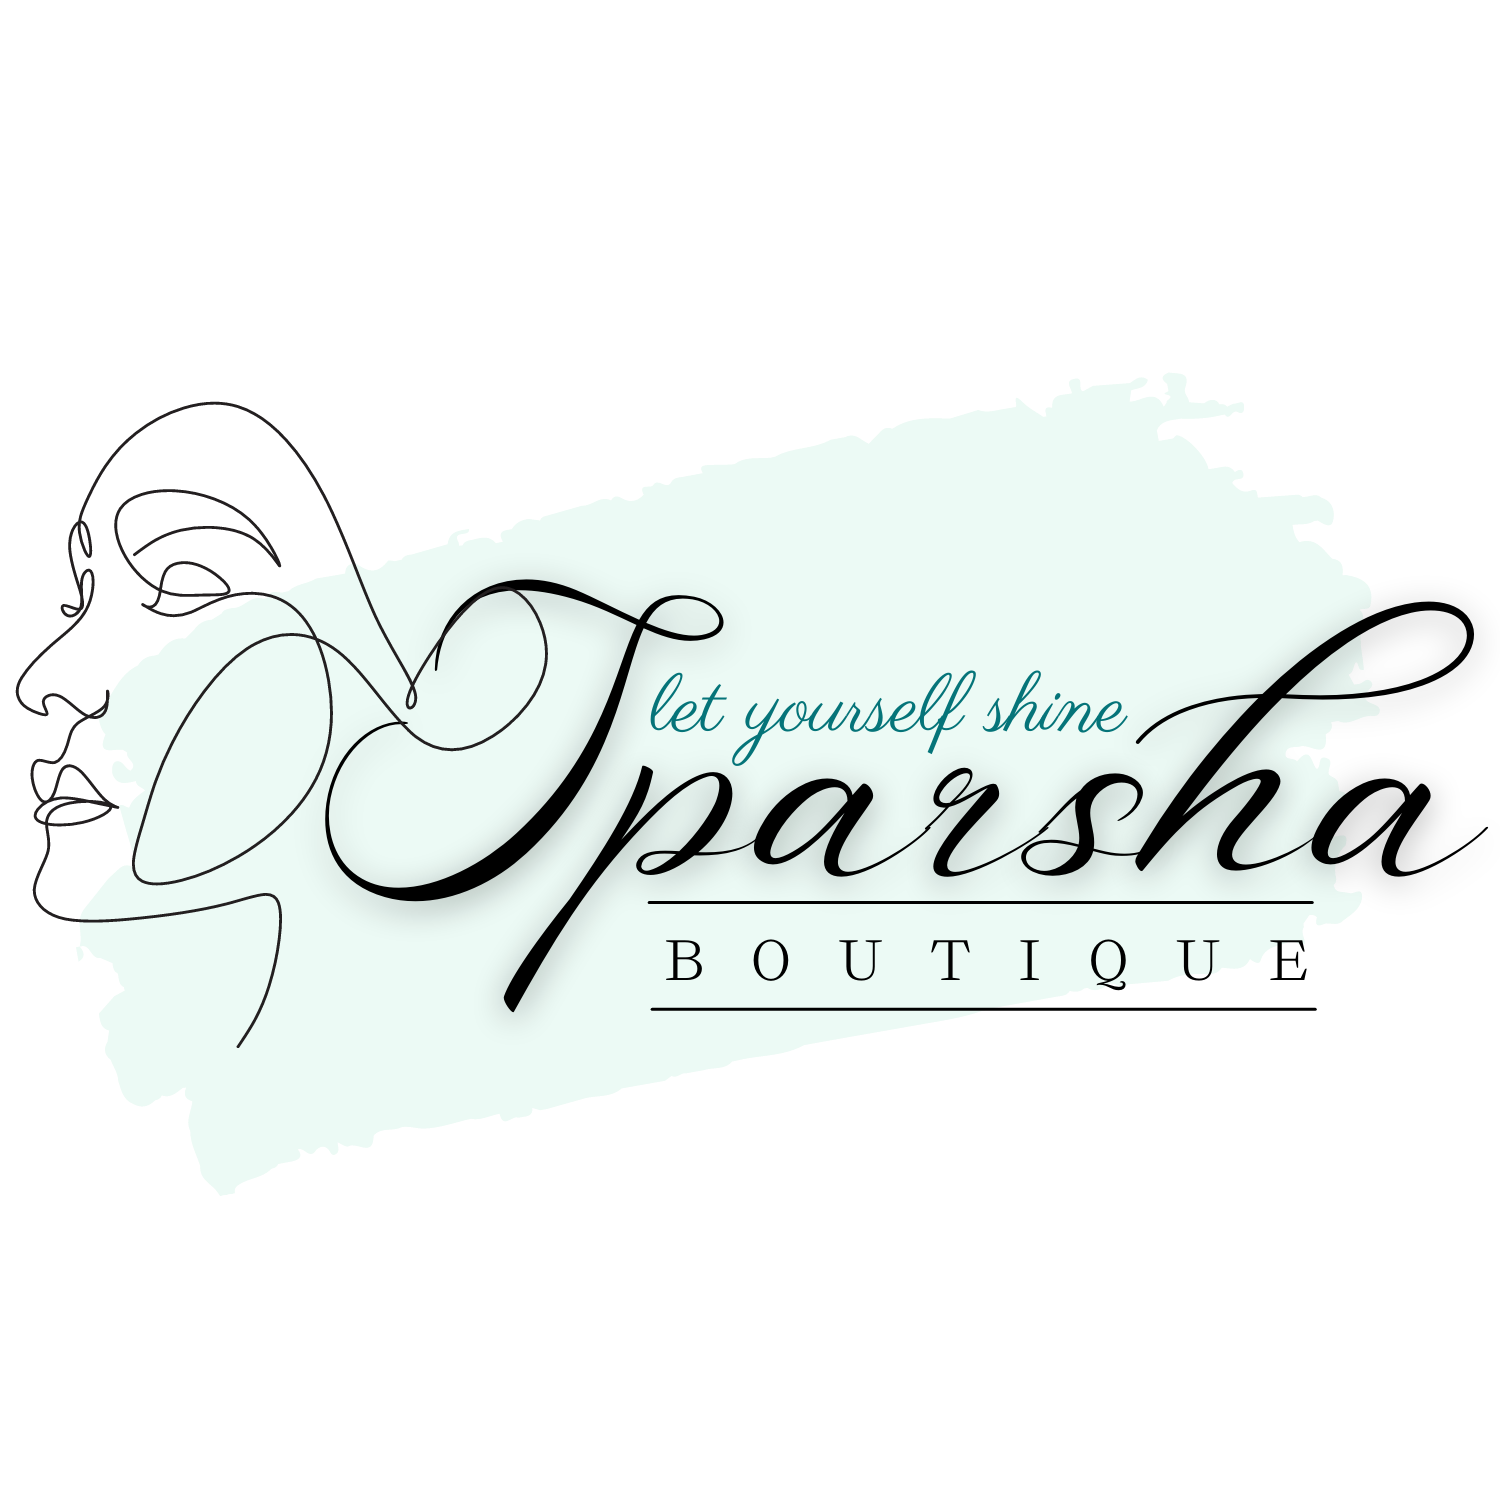 Sparsh Boutique LLC